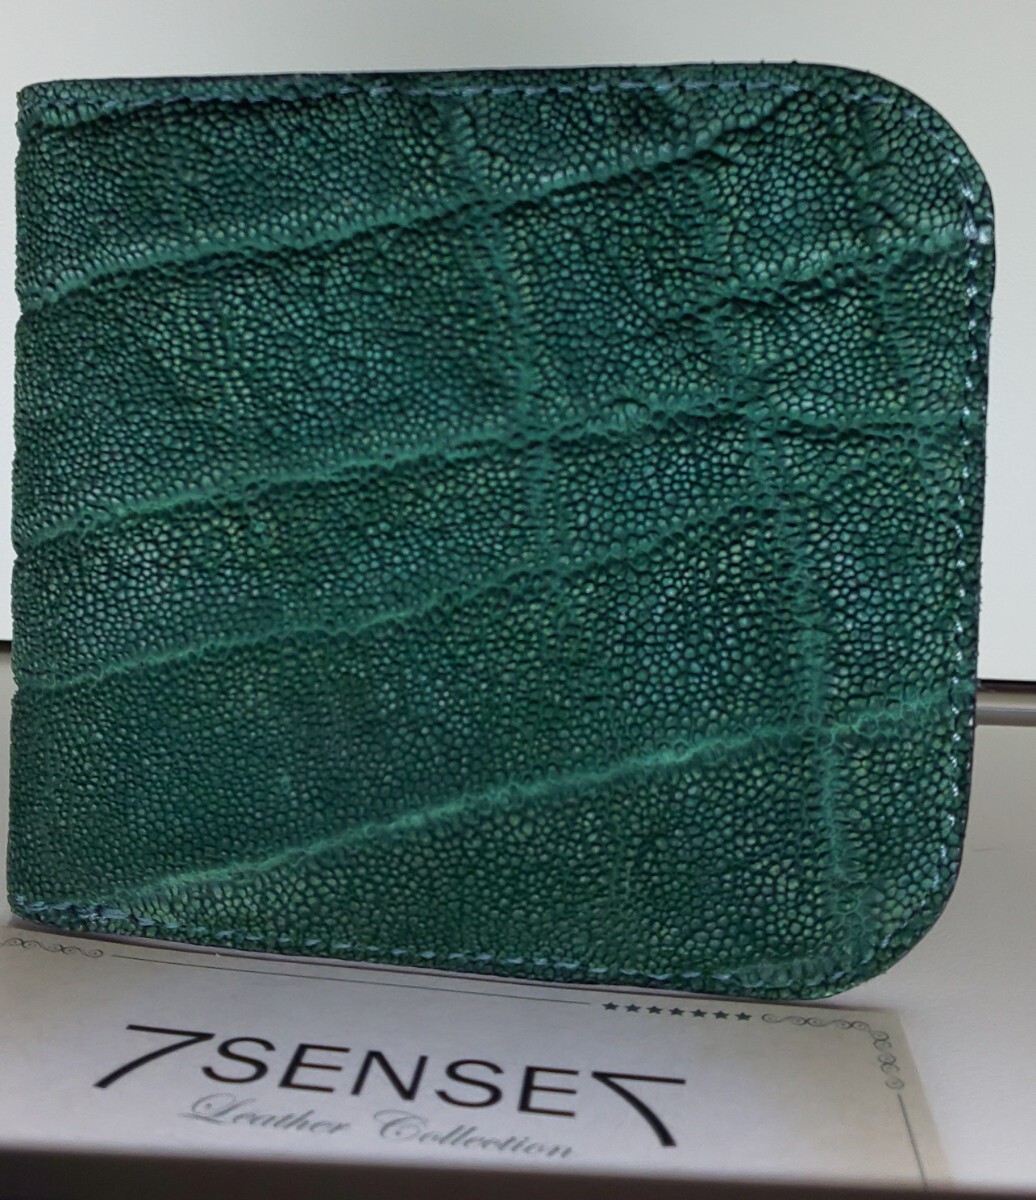 7sense コンパクト二折財布色 モスグリーンのエレファント 内側は特注栃木ヌメのグリーン_画像3